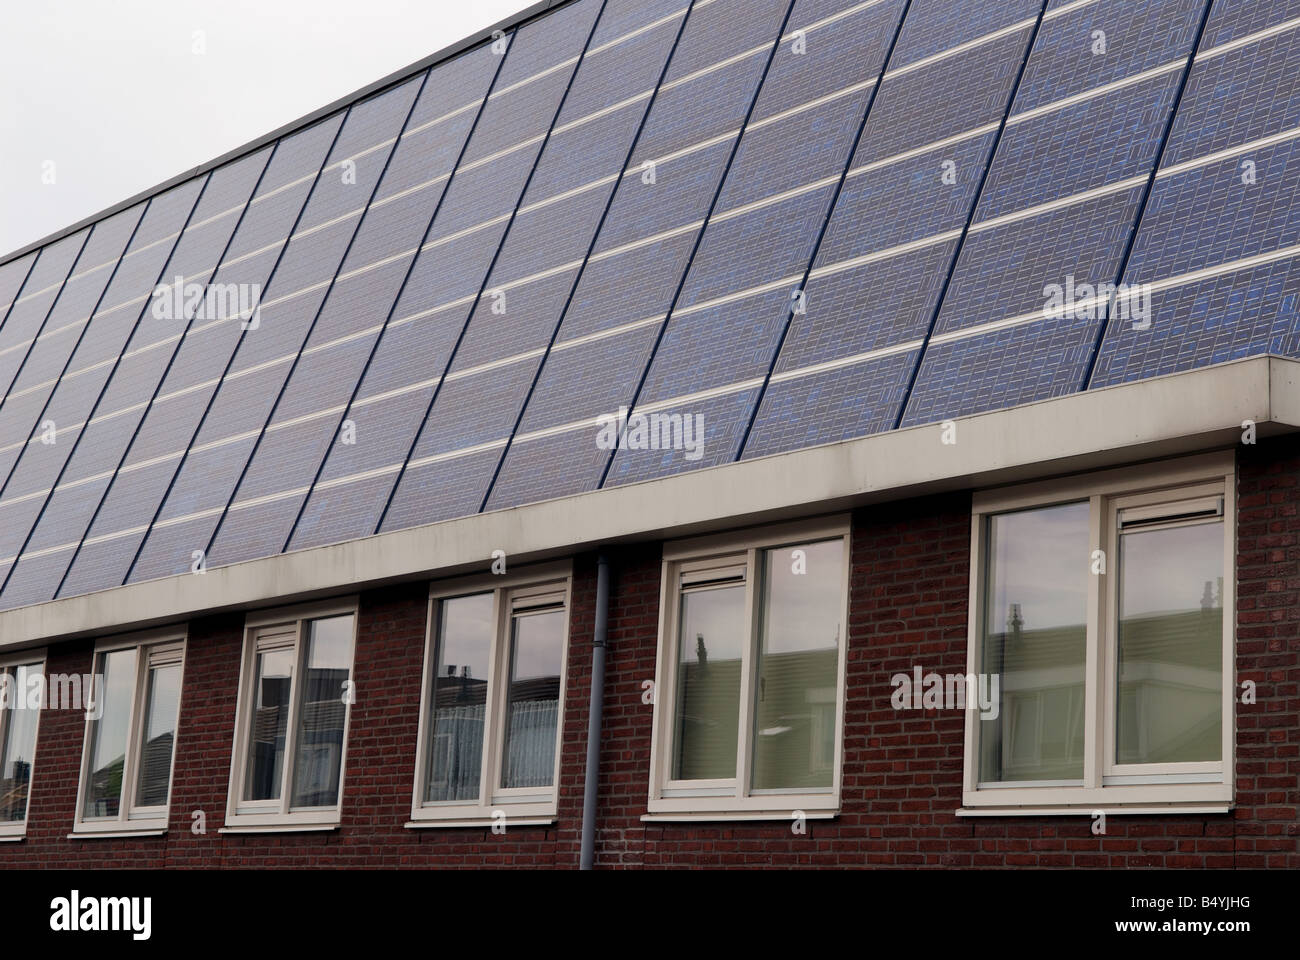 Shell Solar-Panels ausgestattet, um Häuser auf der weltweit größten solar angetriebene Wohnsiedlung, Nieuwland, Amersfoort, Niederlande. Stockfoto